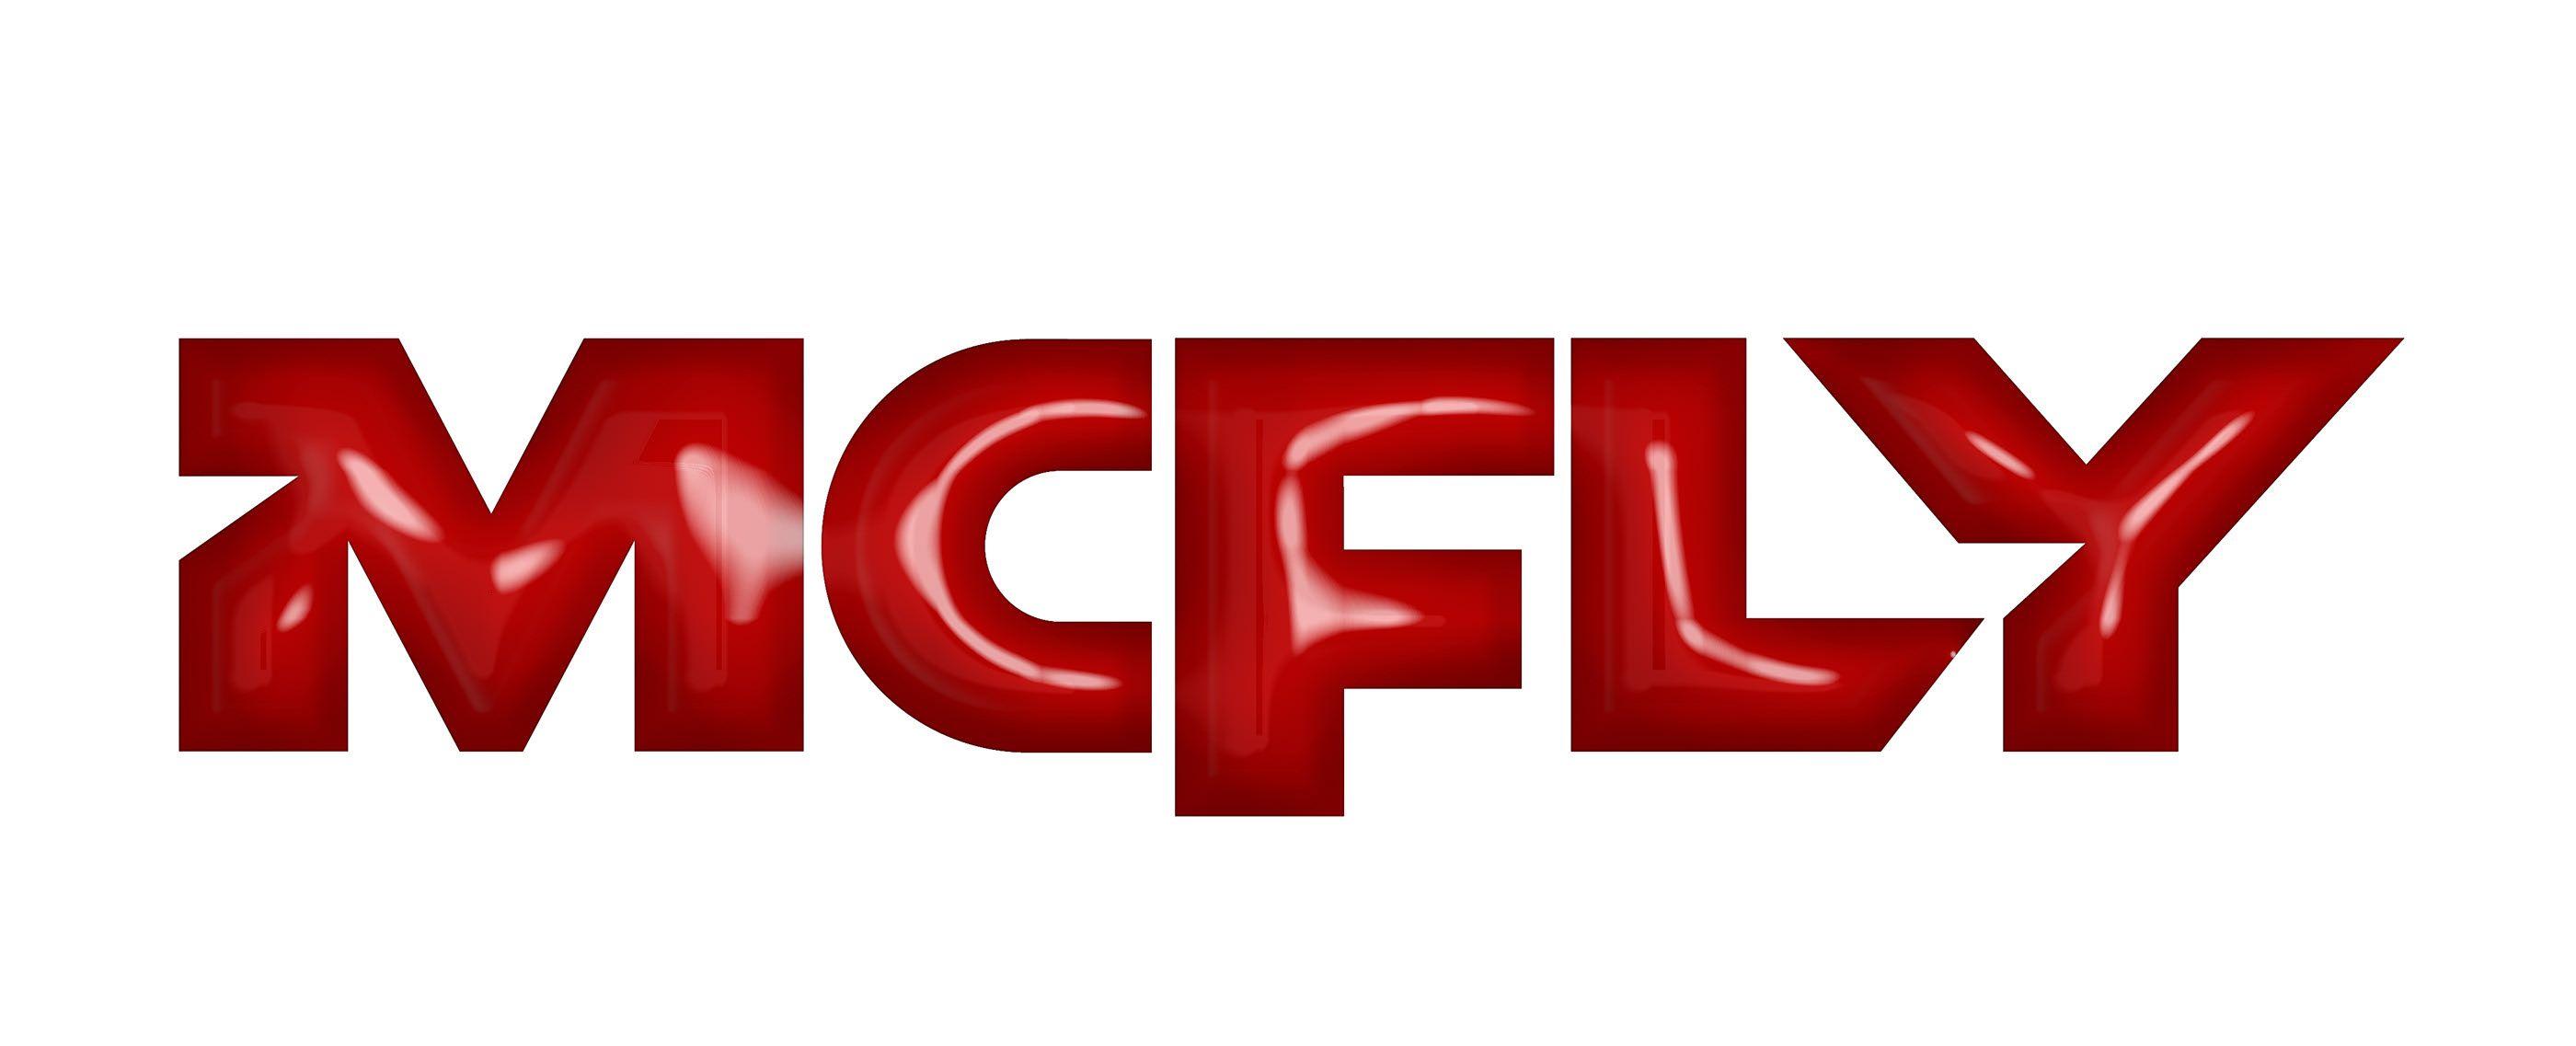 McFly Logo - McFly - Logo Design on Behance